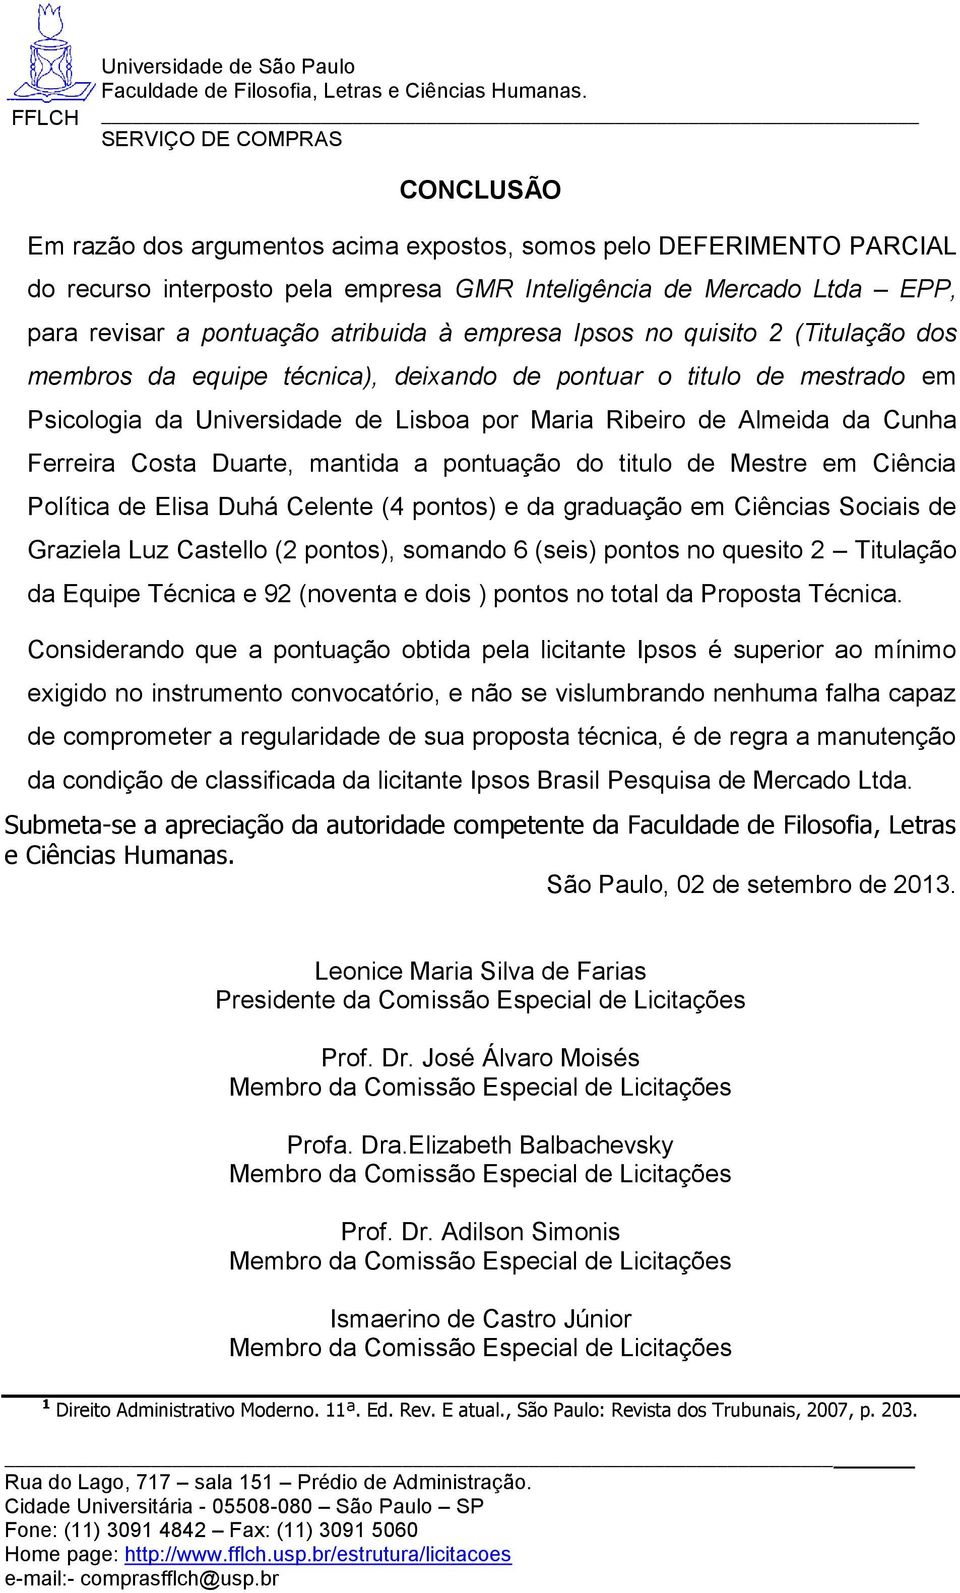 Duarte, mantida a pontuação do titulo de Mestre em Ciência Política de Elisa Duhá Celente (4 pontos) e da graduação em Ciências Sociais de Graziela Luz Castello (2 pontos), somando 6 (seis) pontos no